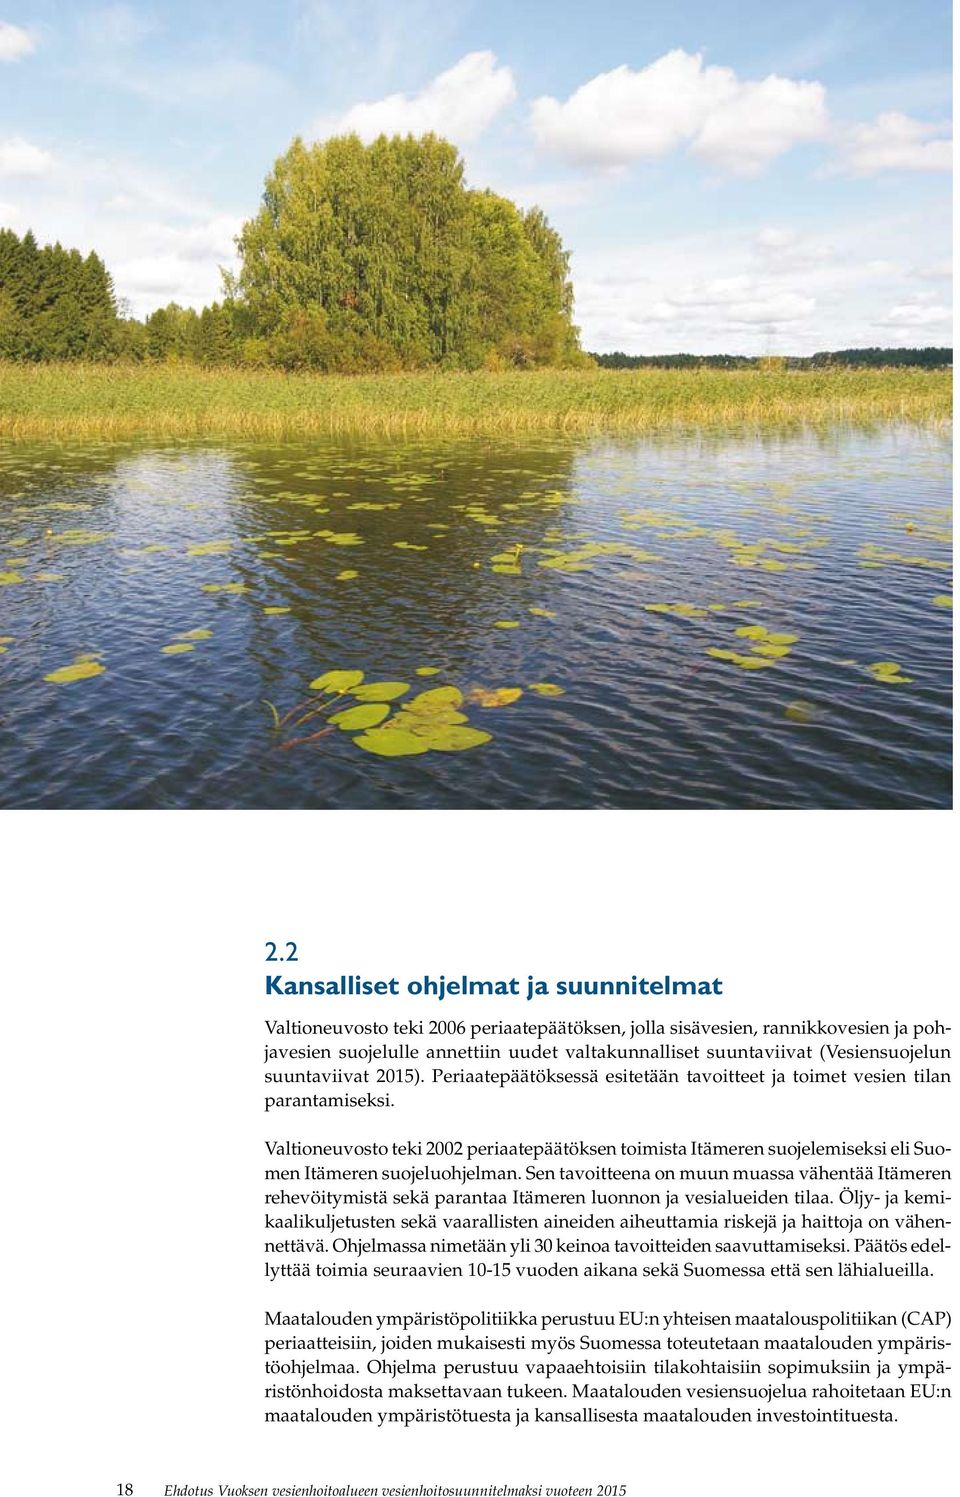 Valtioneuvosto teki 2002 periaatepäätöksen toimista Itämeren suojelemiseksi eli Suomen Itämeren suojeluohjelman.